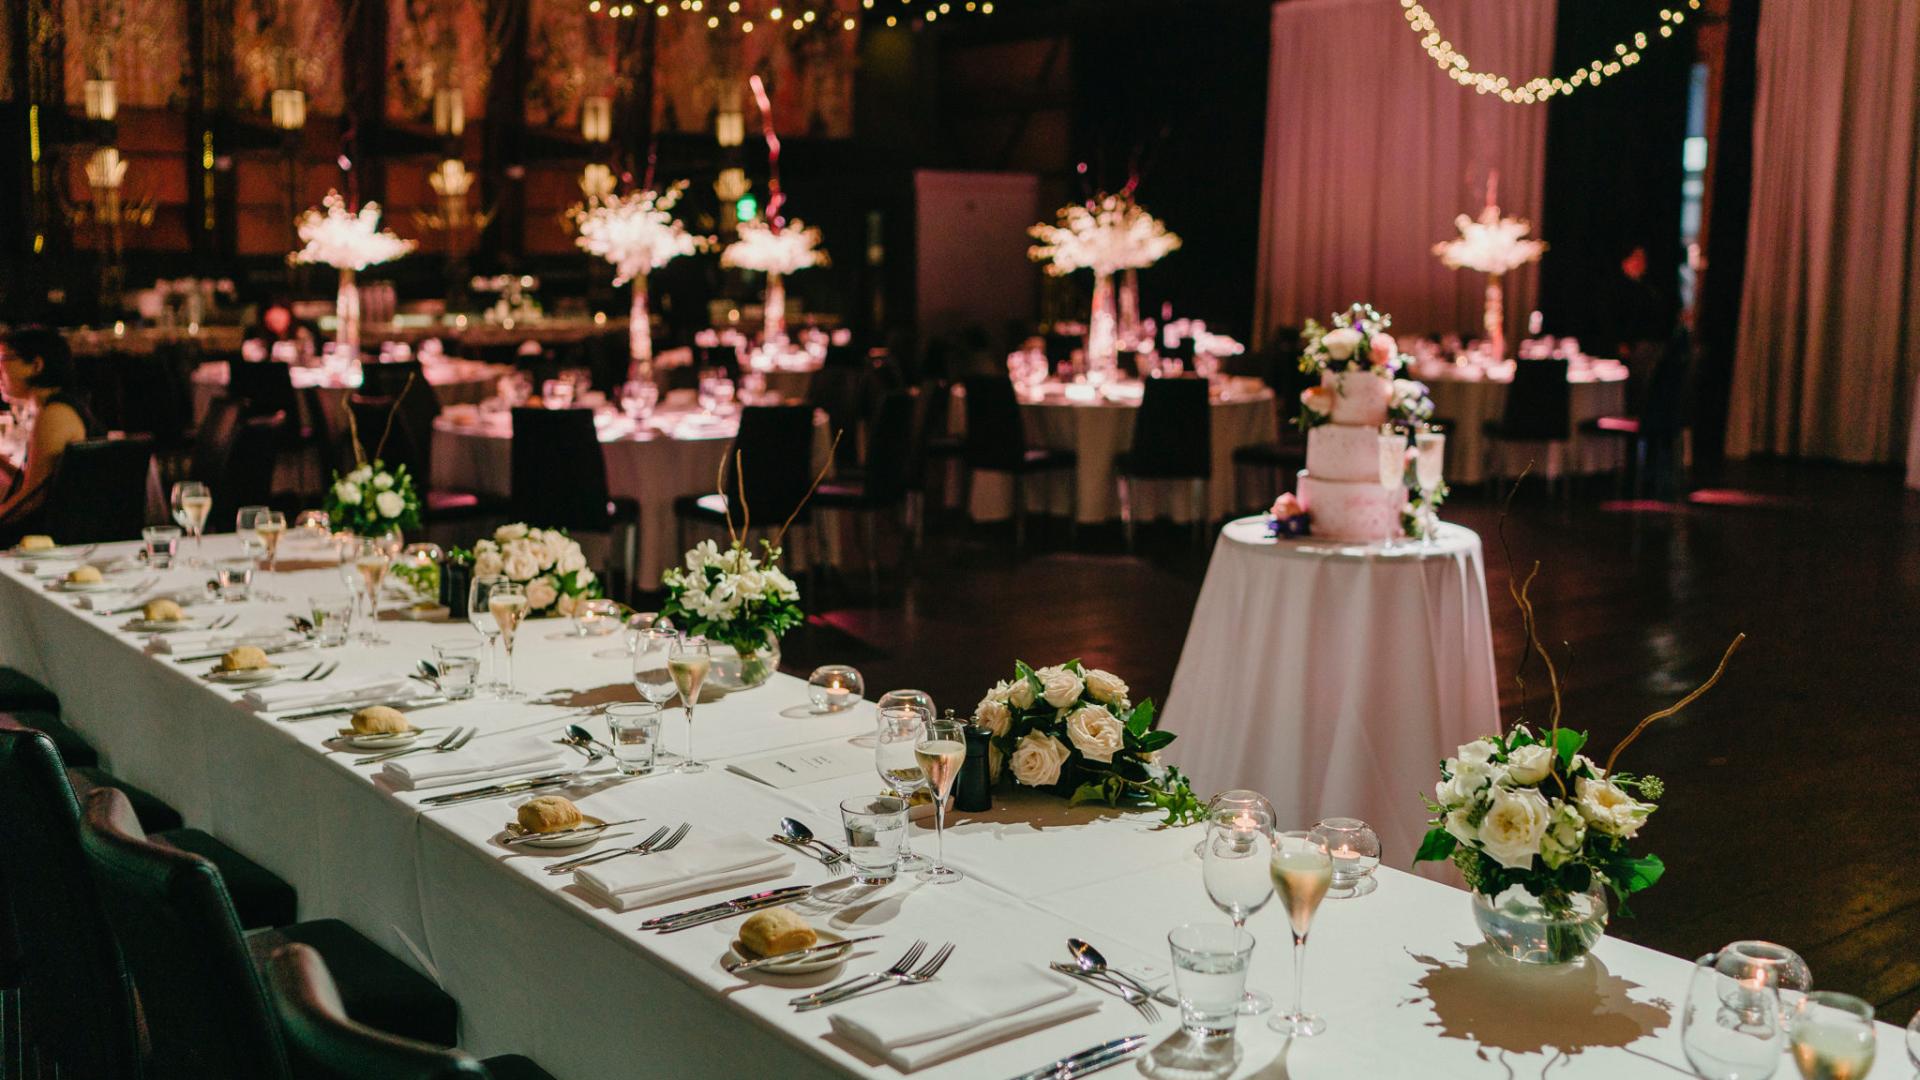 Find your Wedding Venue in Docklands, Melbourne